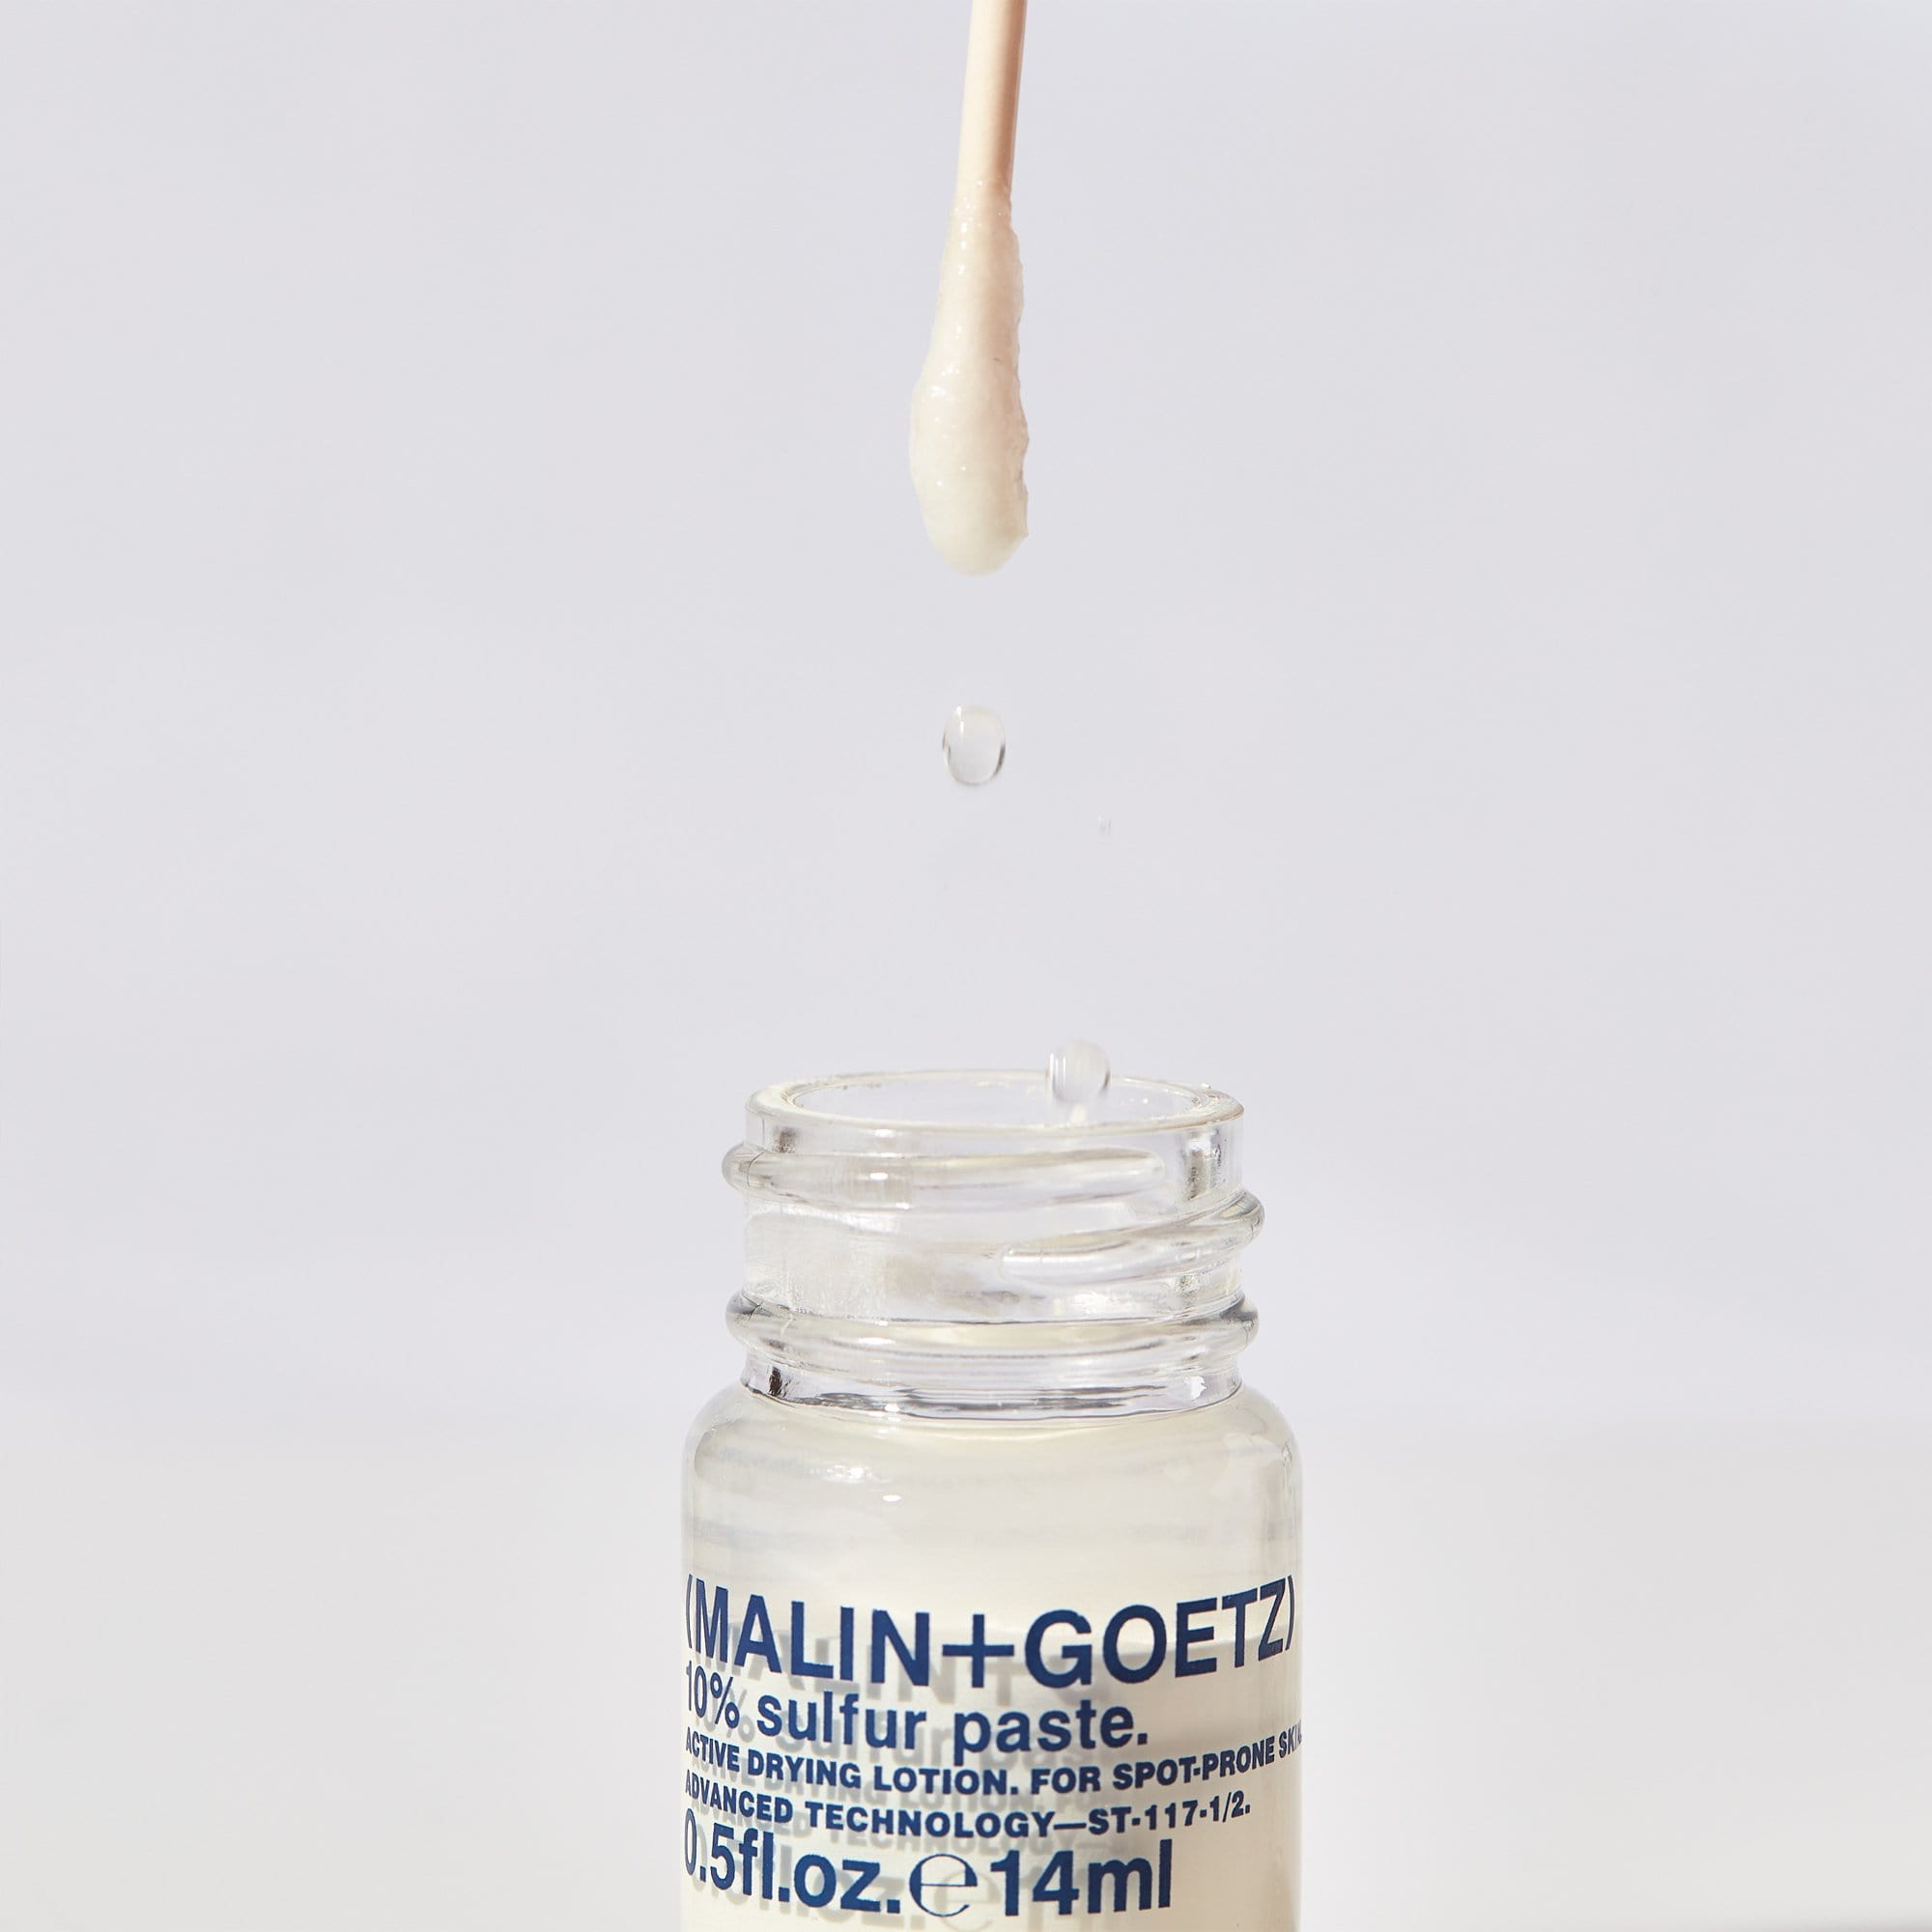 10% Sulfur Paste de (MALIN+GOETZ) Tratamiento para el acné